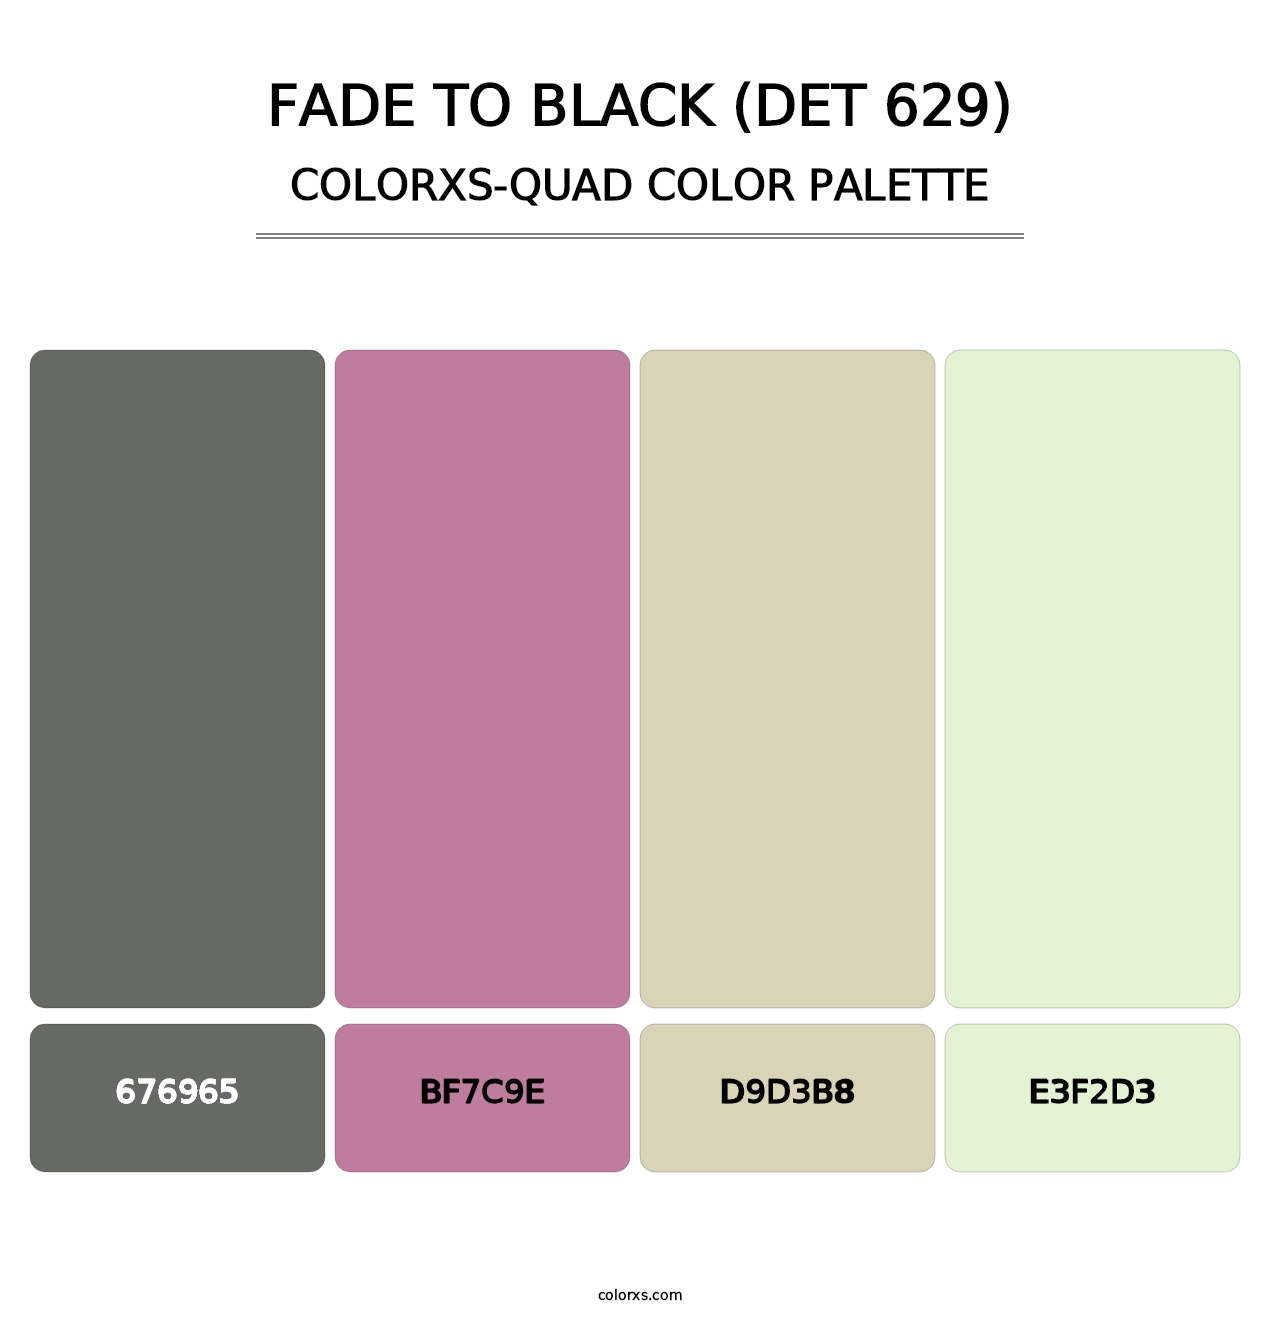 Fade to Black (DET 629) - Colorxs Quad Palette